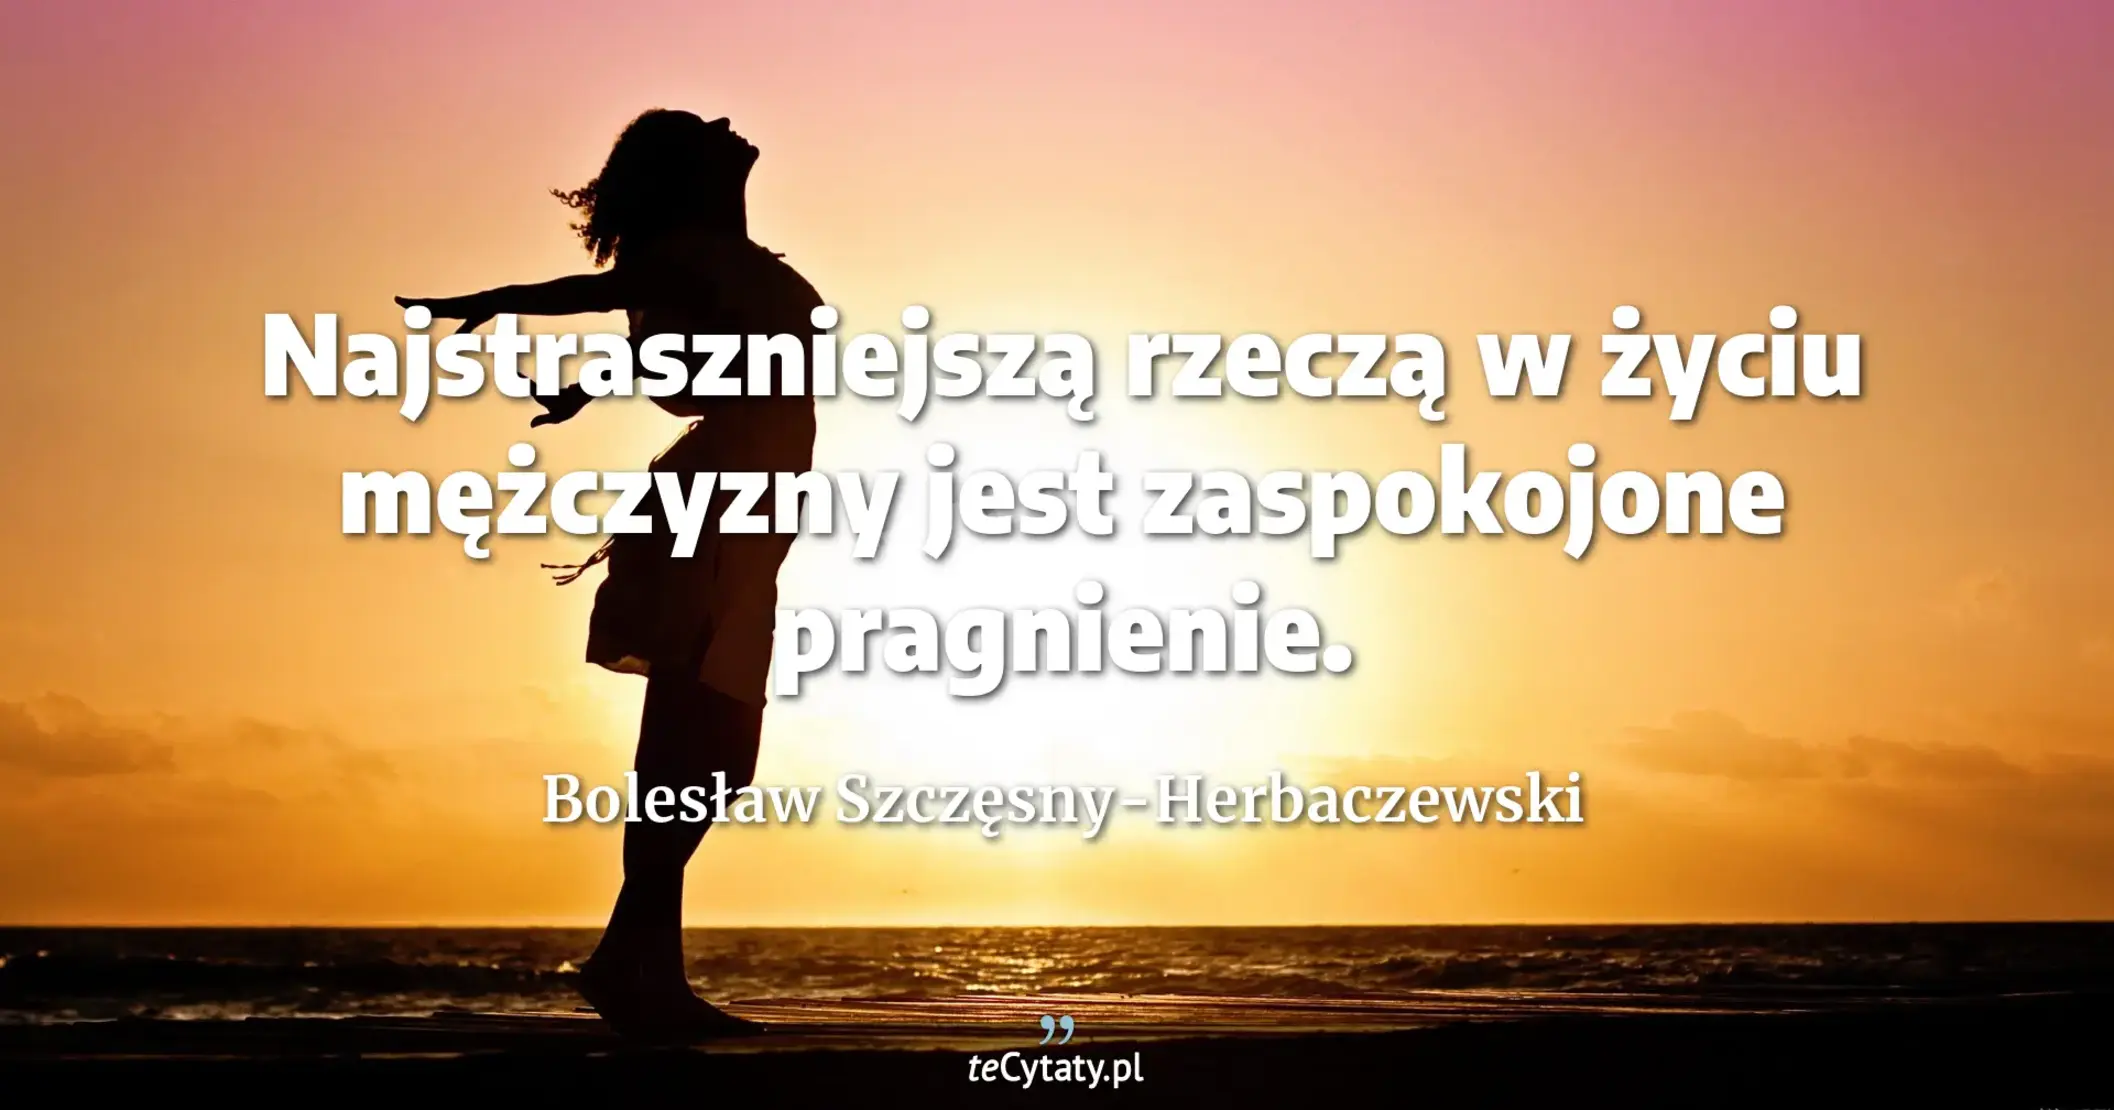 Najstraszniejszą rzeczą w życiu mężczyzny jest zaspokojone pragnienie. - Bolesław Szczęsny-Herbaczewski